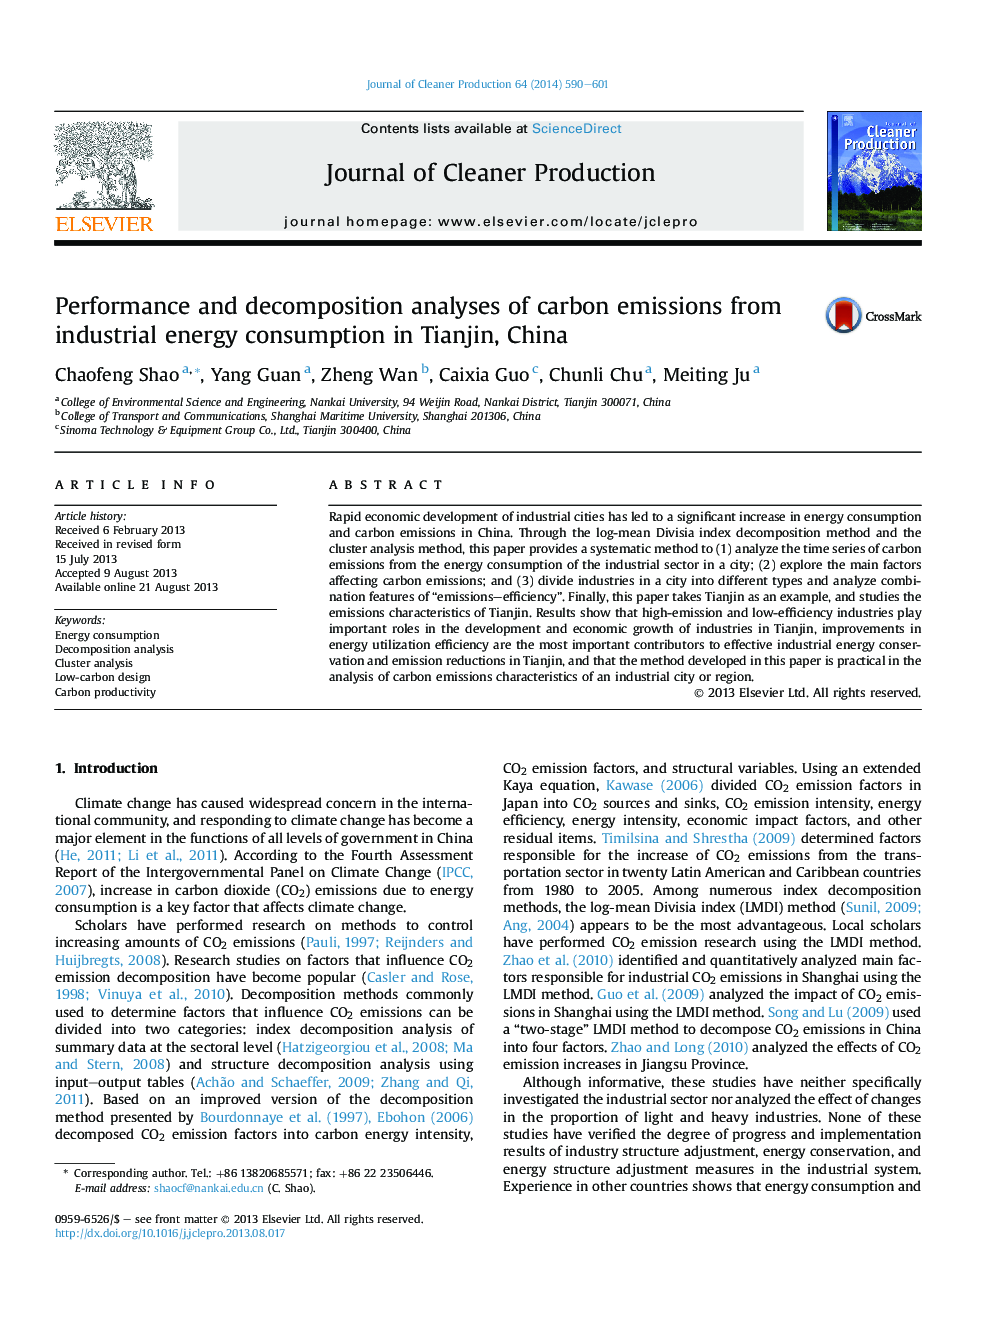 تجزیه و تحلیل عملکرد و تجزیه انتشار کربن از مصرف انرژی صنعتی در تیانجین، چین 